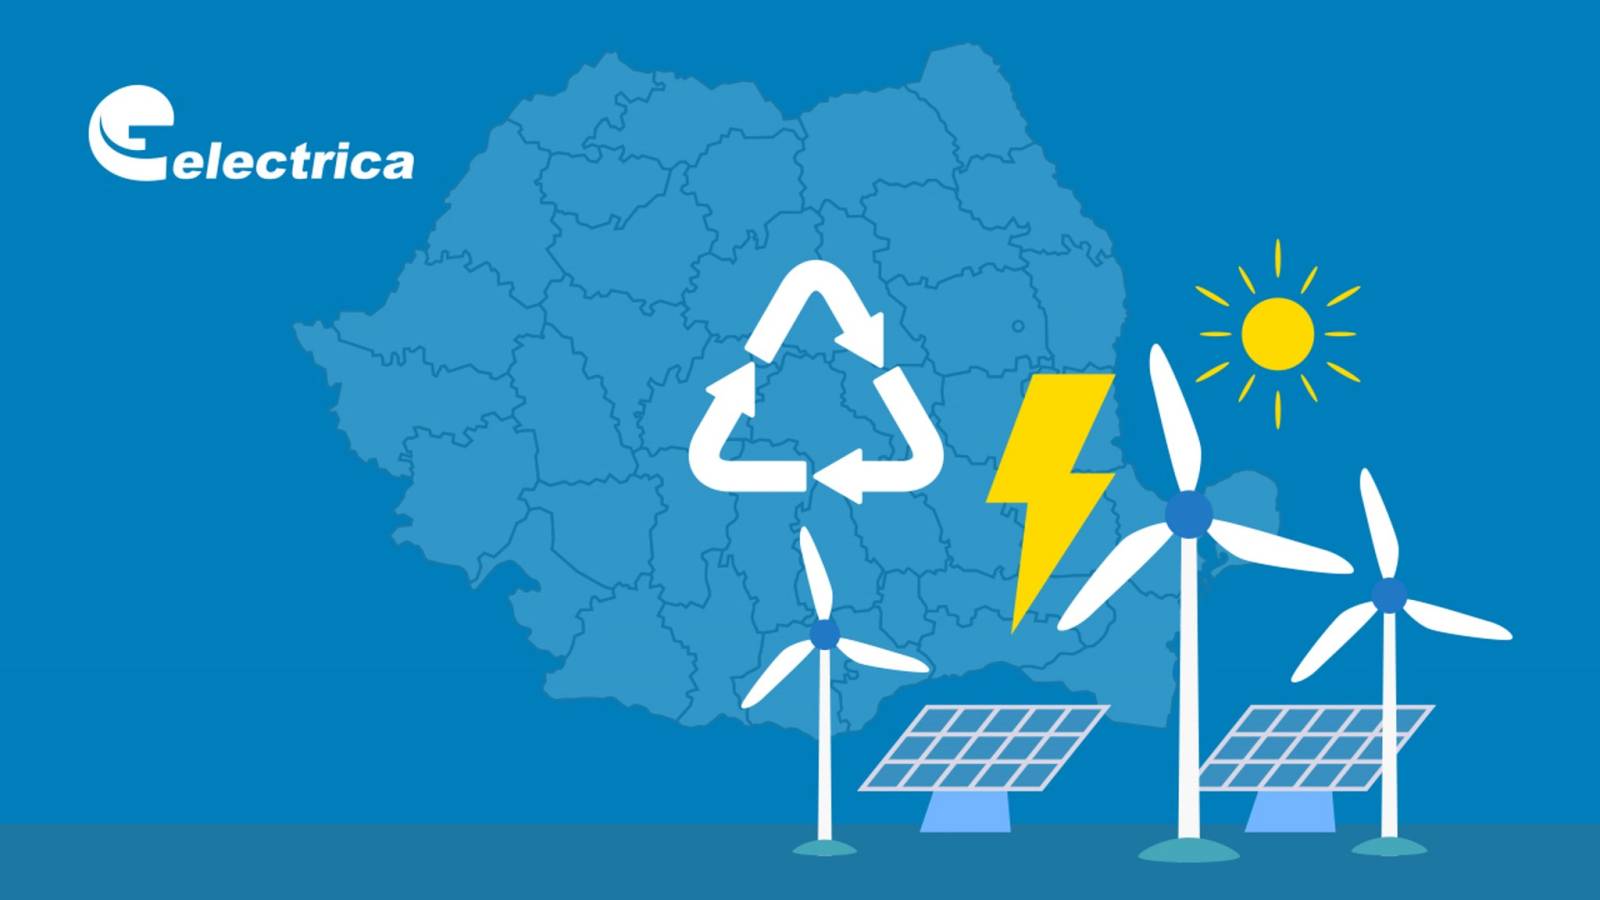 Demande officielle d'Electrica DERNIÈRE MINUTE transmise ATTENTION Des millions de clients roumains